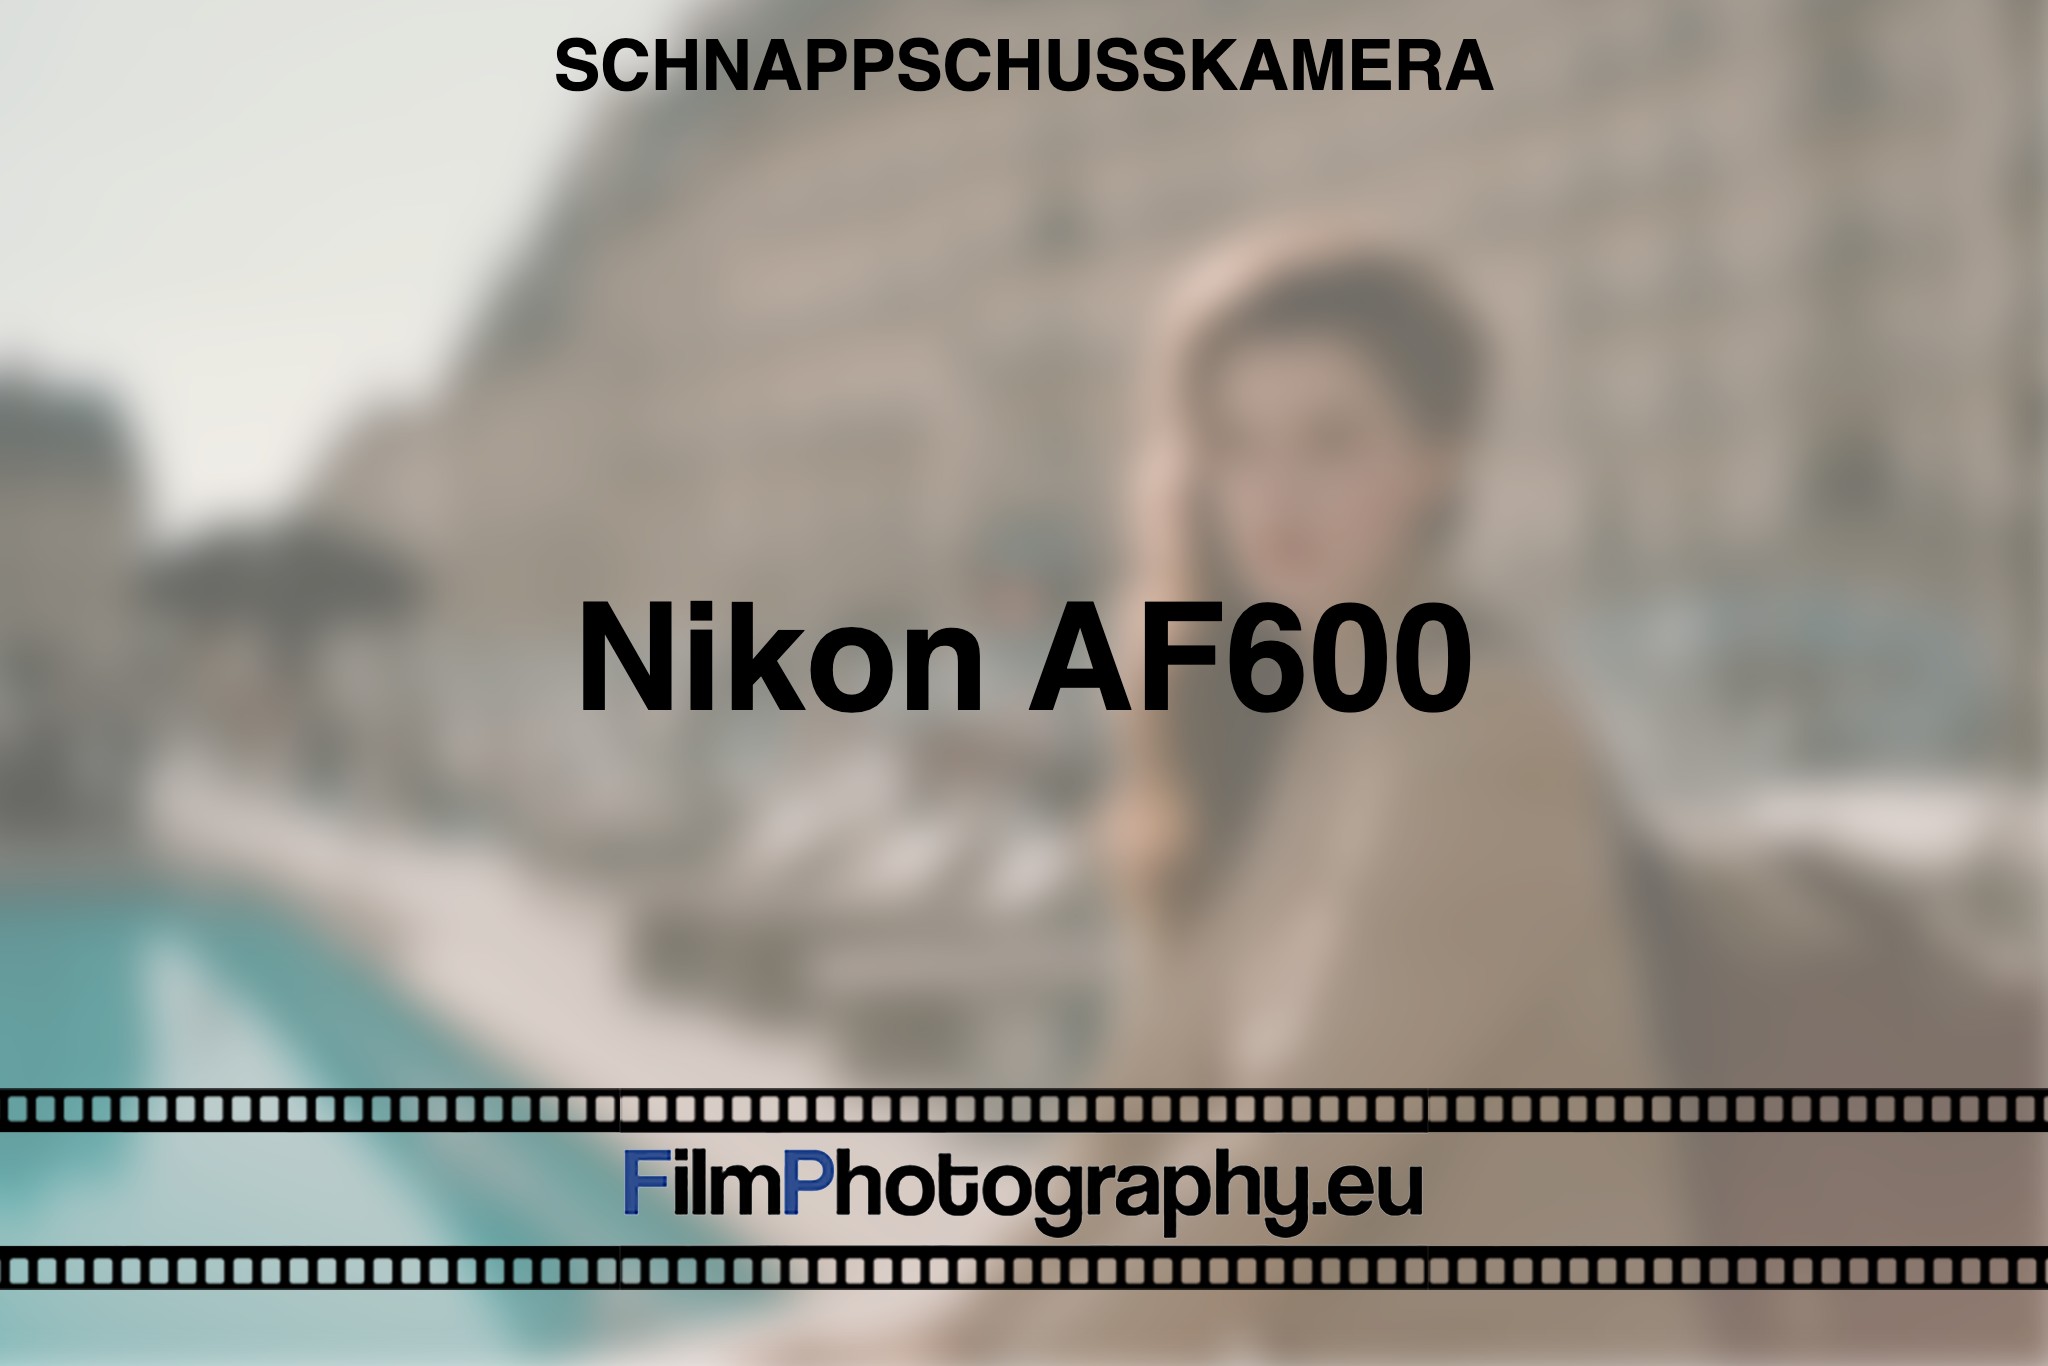 nikon-af600-schnappschusskamera-bnv